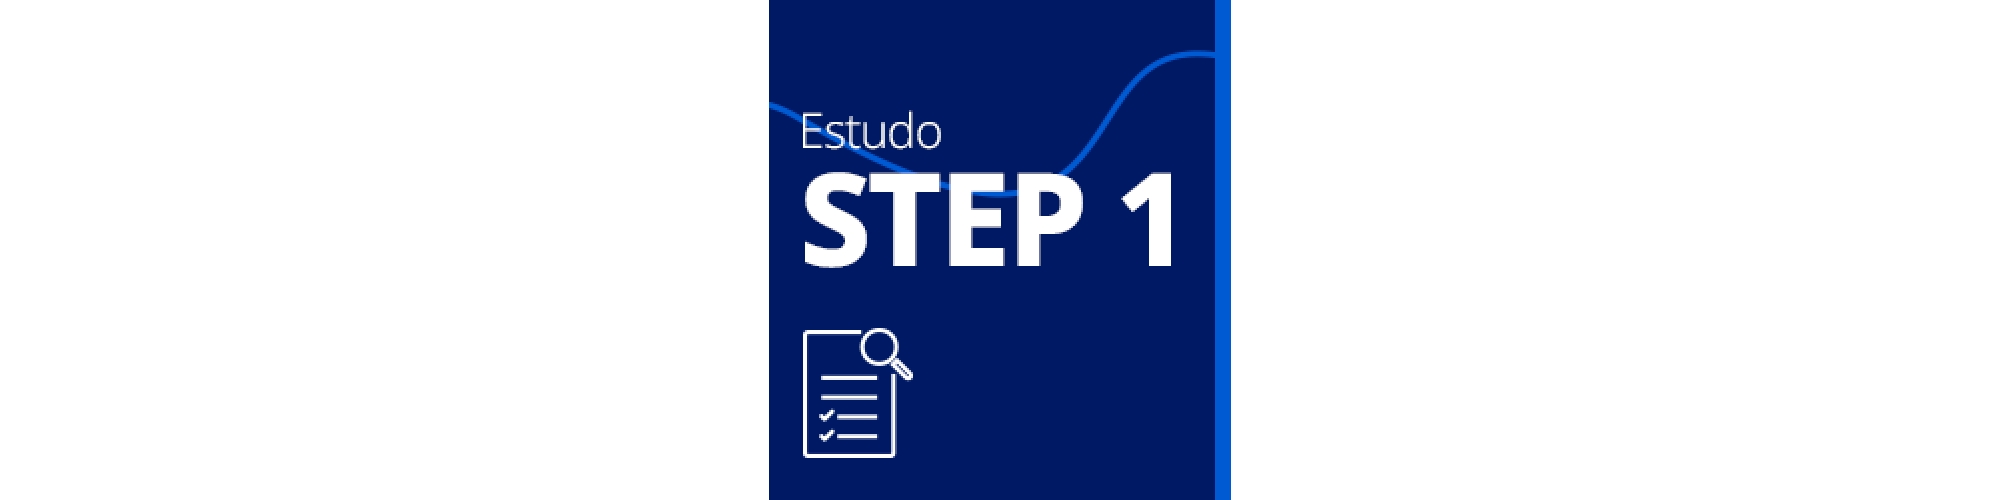 Estudo STEP1